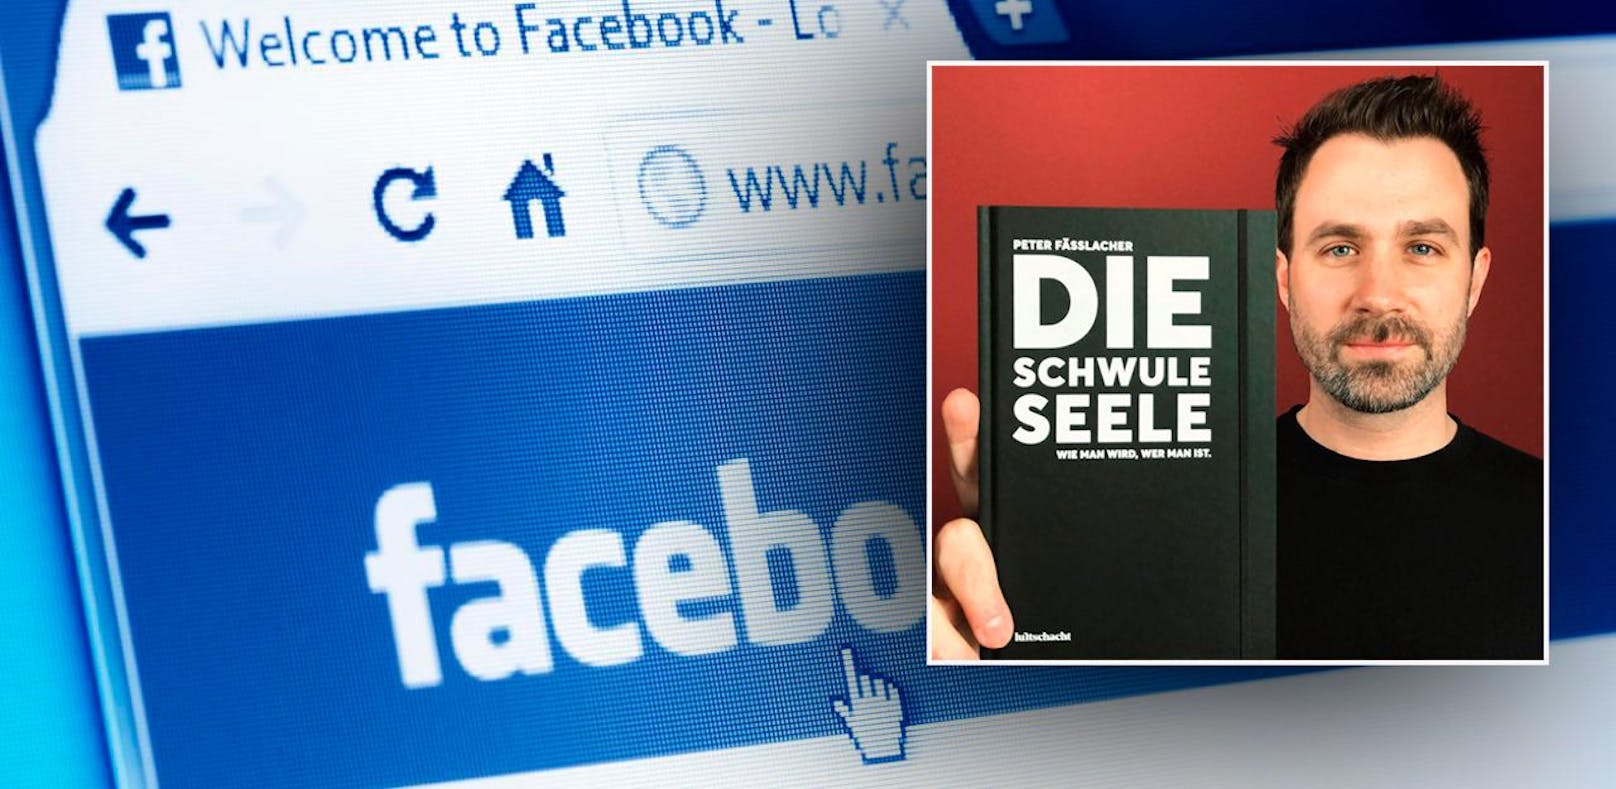 Auf Facebook postete Fässlacher sein neues Buch "Die schwule Seele" und wurde daraufhin von Facebook gesperrt.